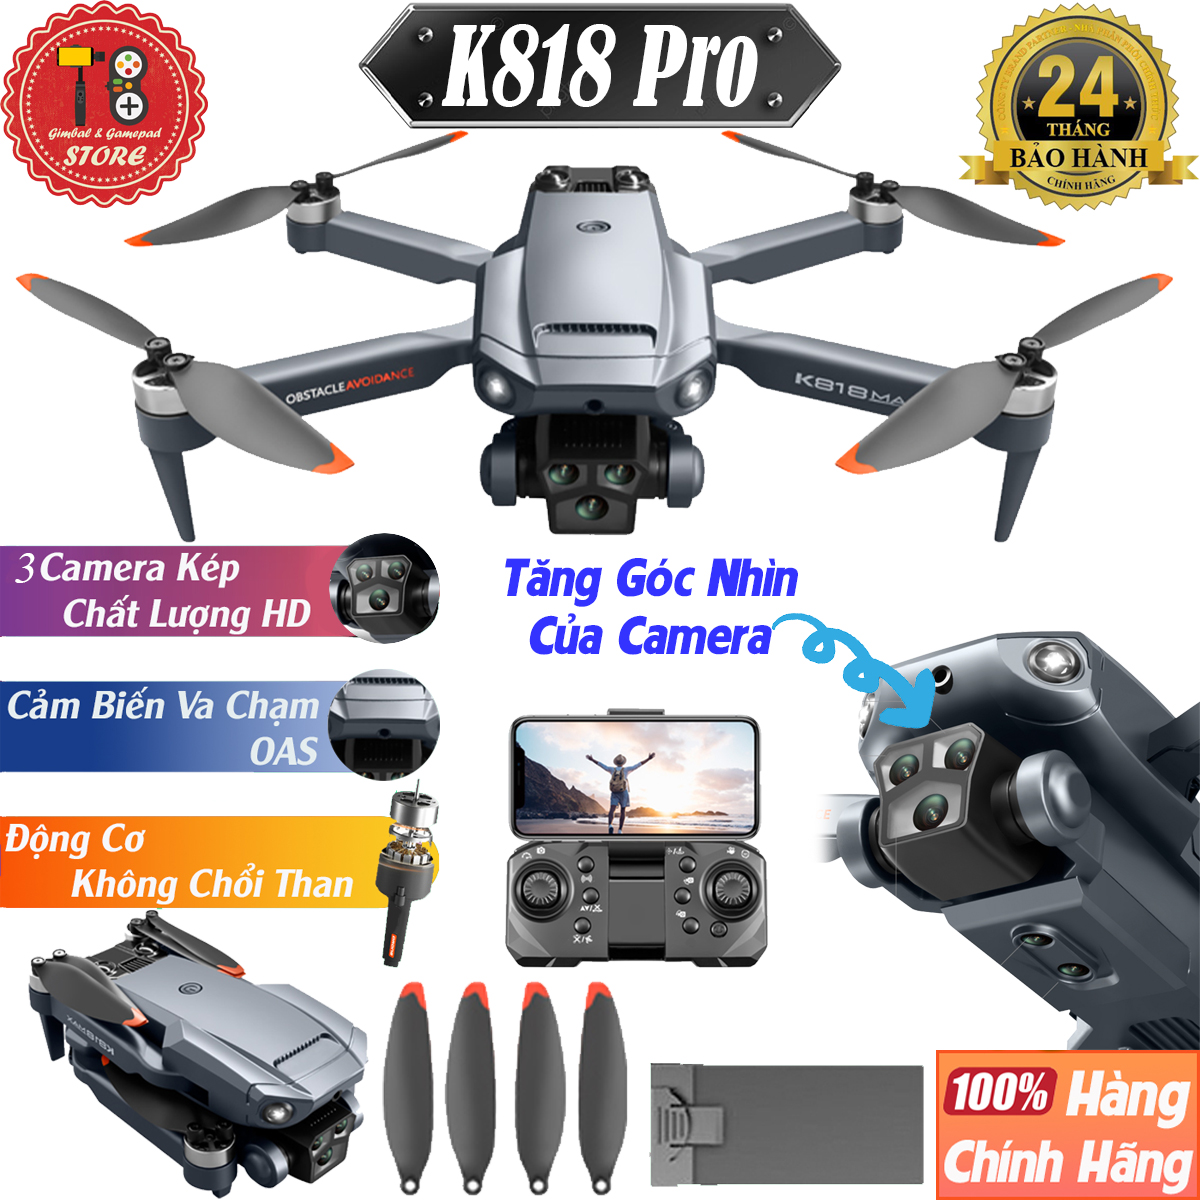 Máy Bay Điều Khiển Từ Xa, Flycam K818 động cơ không chổi than tích hợp 3 camera kép HD -Tránh chướng ngoại vật-Flycam giá rẻ-Flycam mini-Flycam 6k